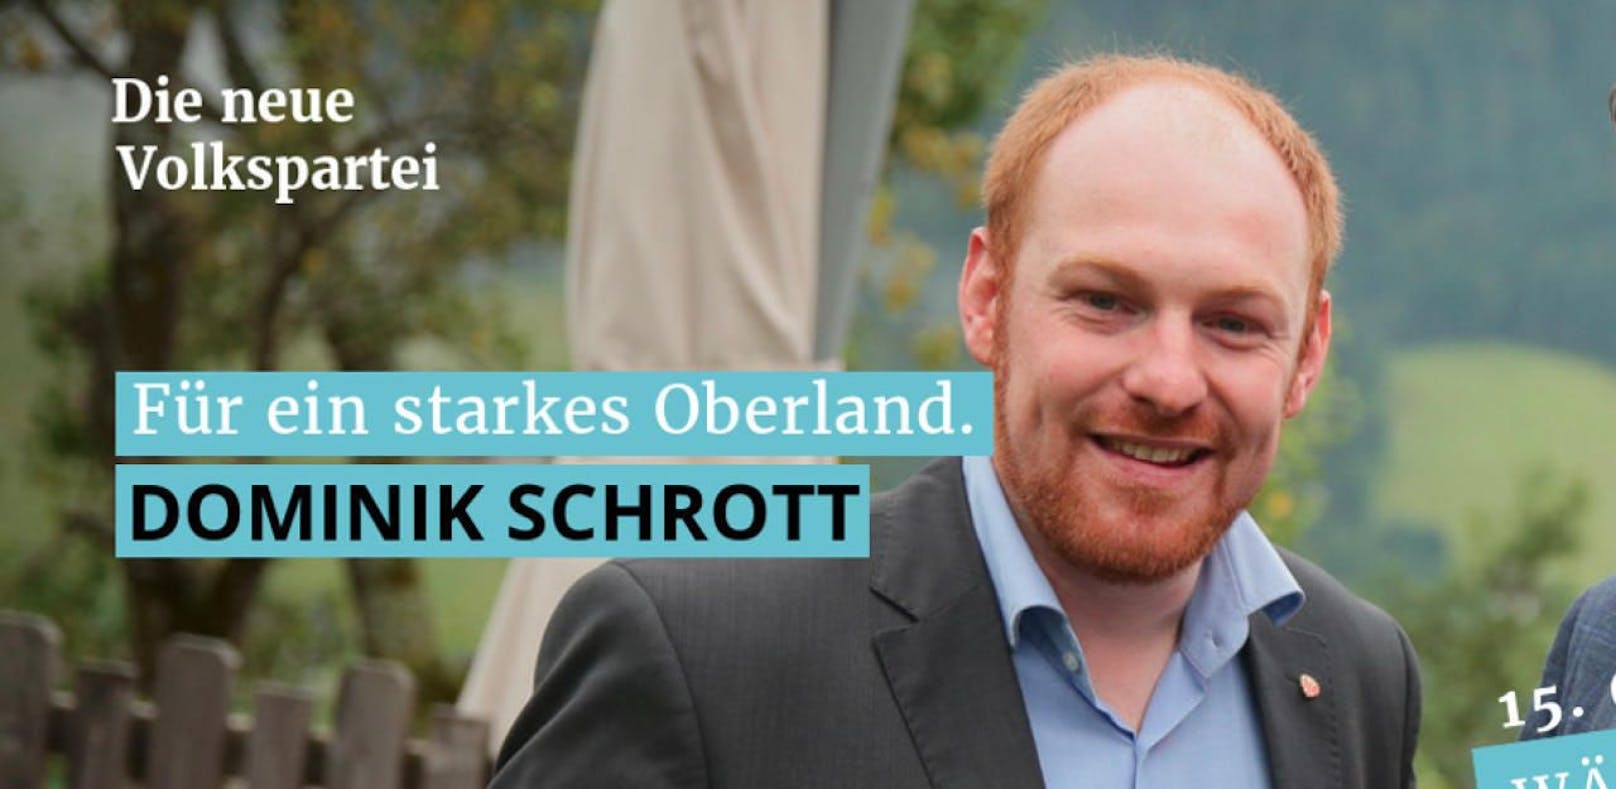 Die Polit-Karriere von ÖVP-Mandatar Dominik Schrott hängt momentan am sprichwörtlichen seidernen Faden.